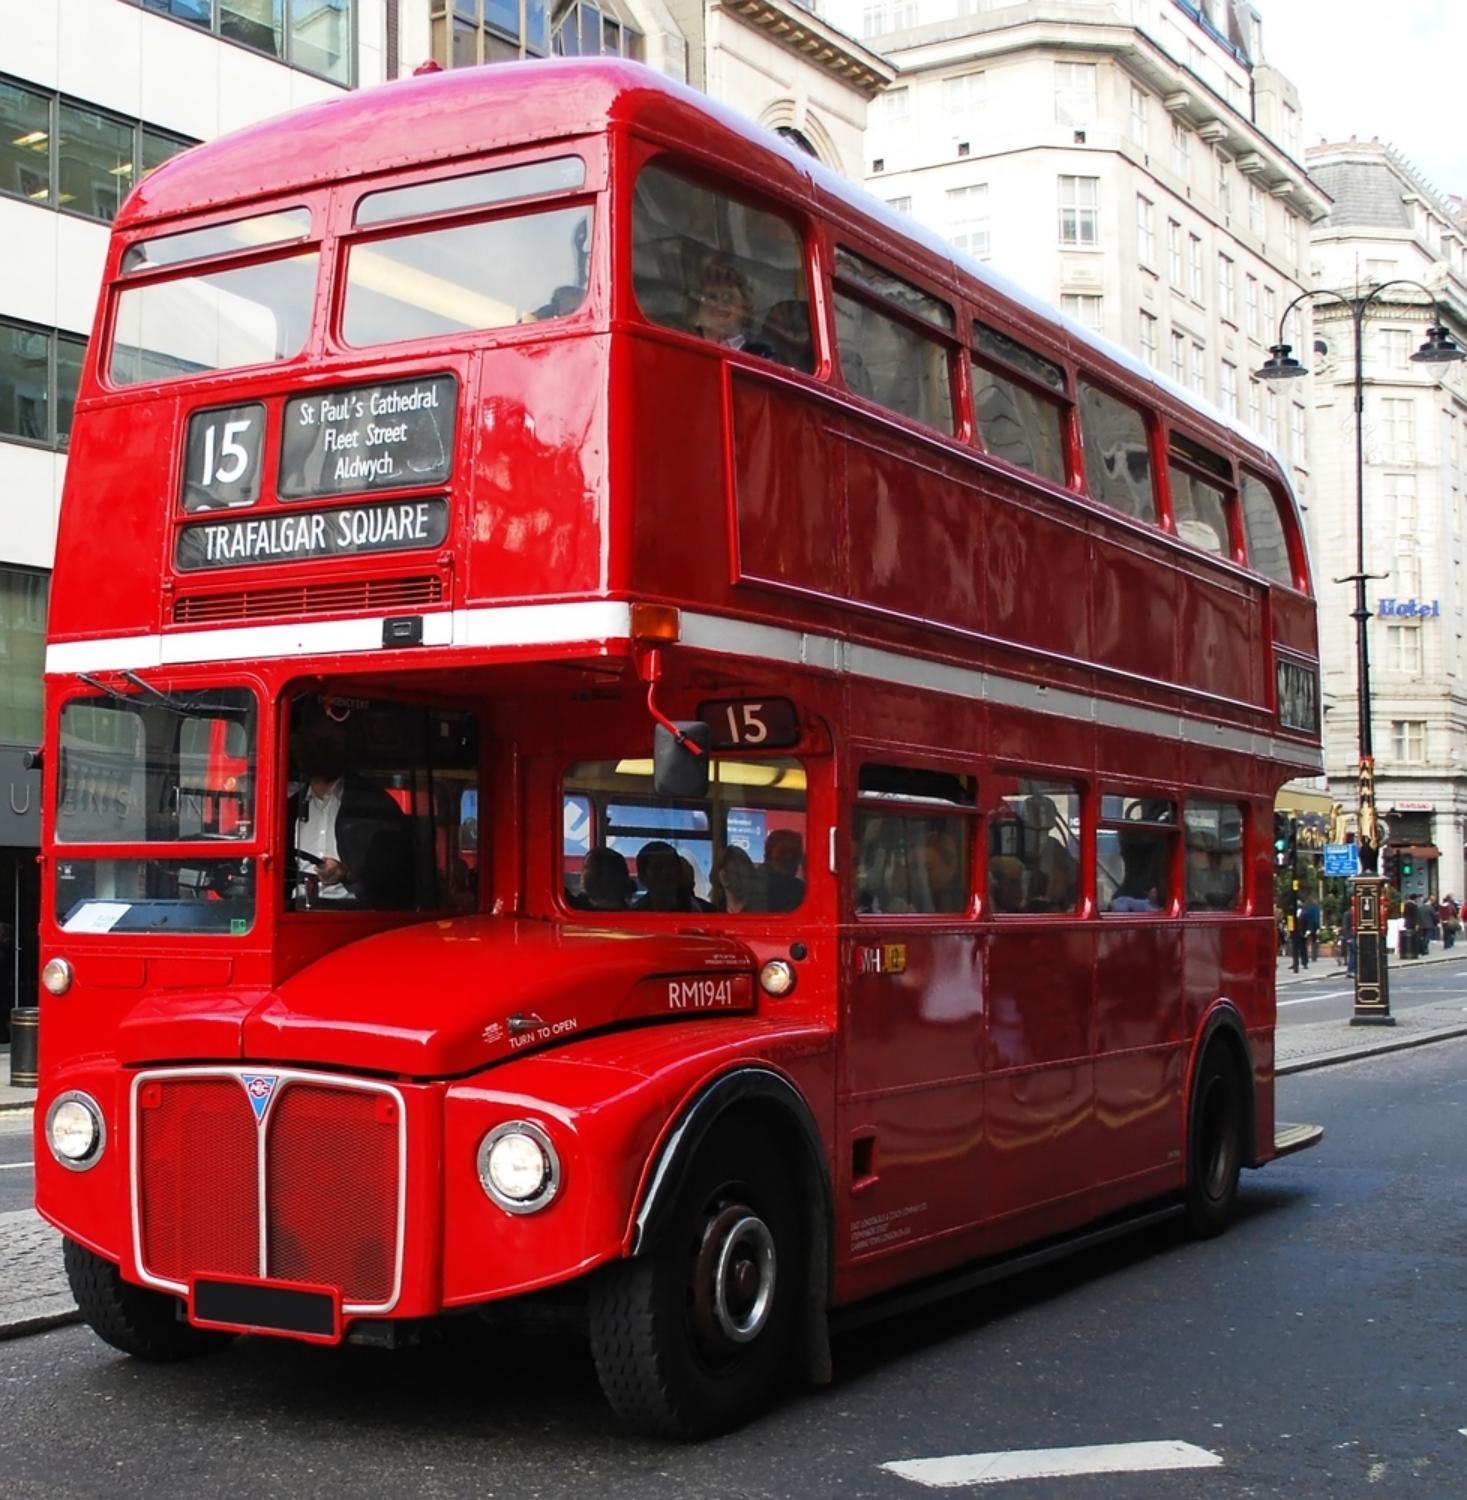 Visit London: Thames Cruise & Sightseeing Bus Tour